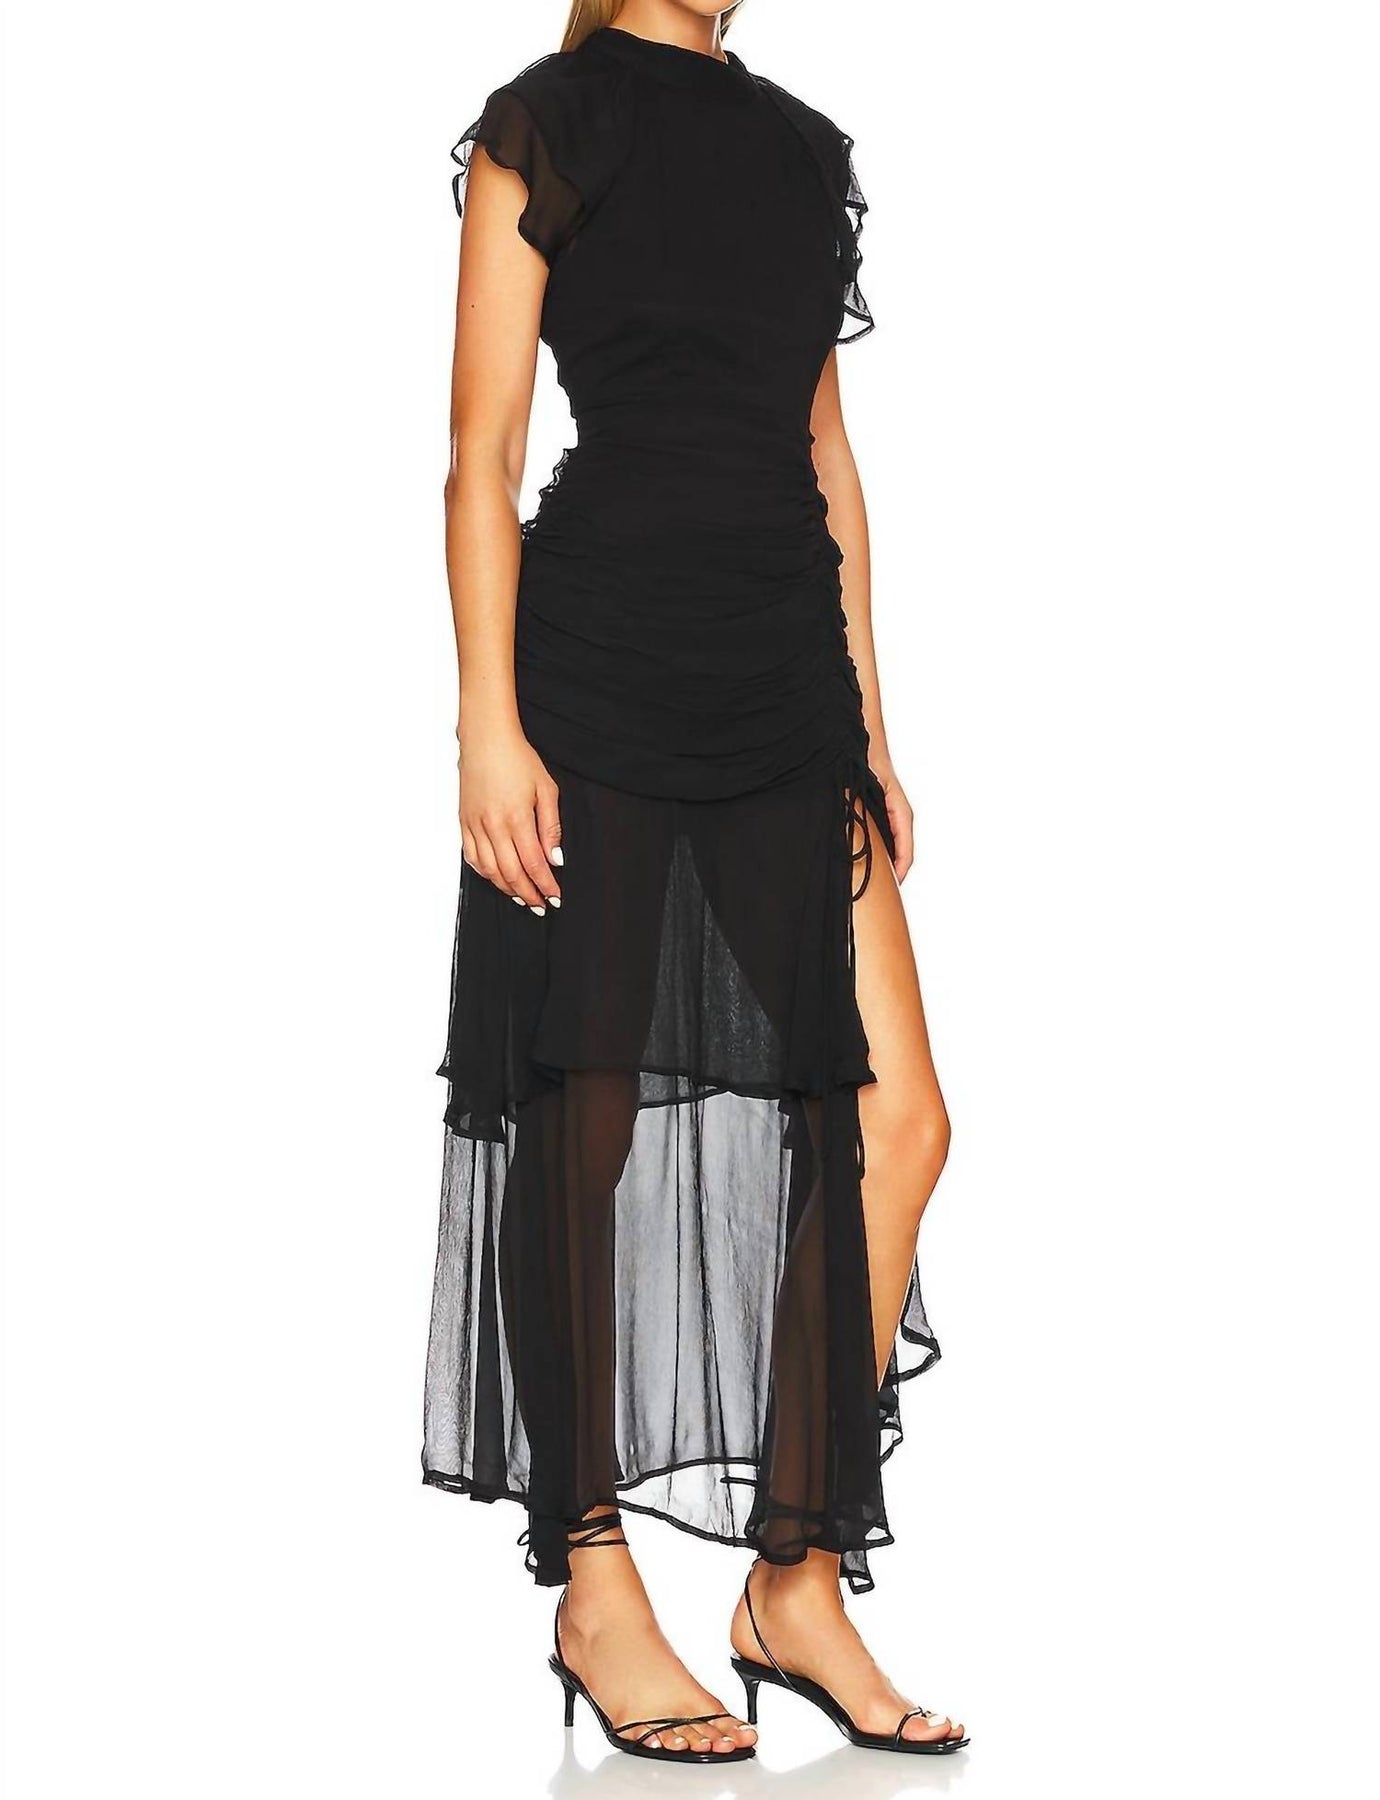 Cleobella Cecilia Midi Dress in Black | Shop Premium Outlets